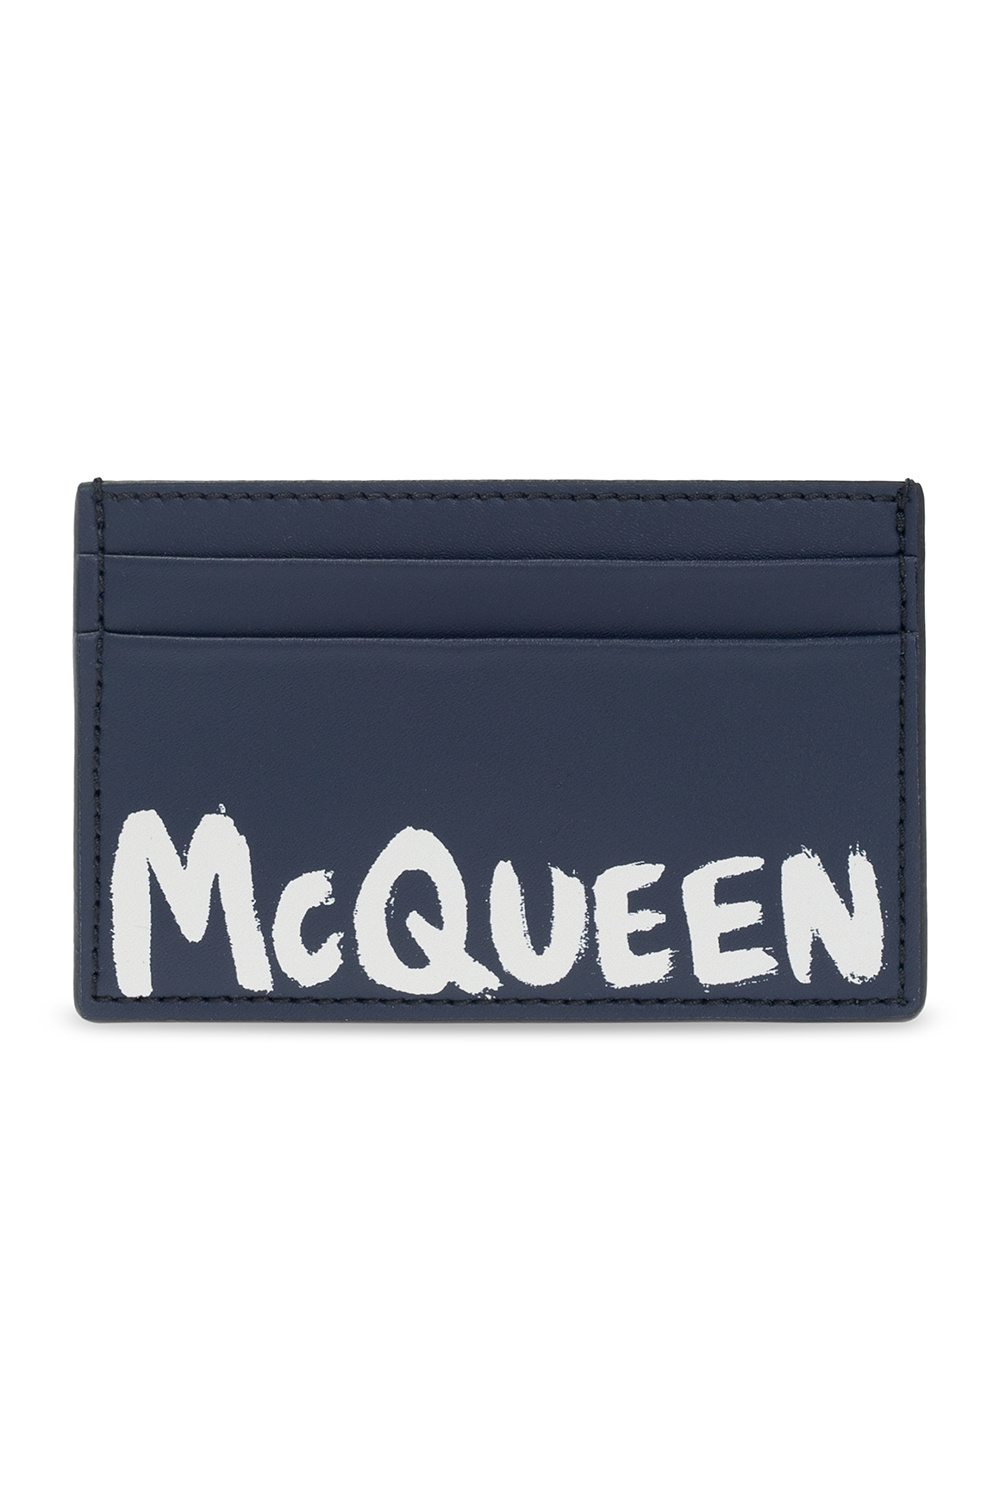 Alexander McQueen Card holder